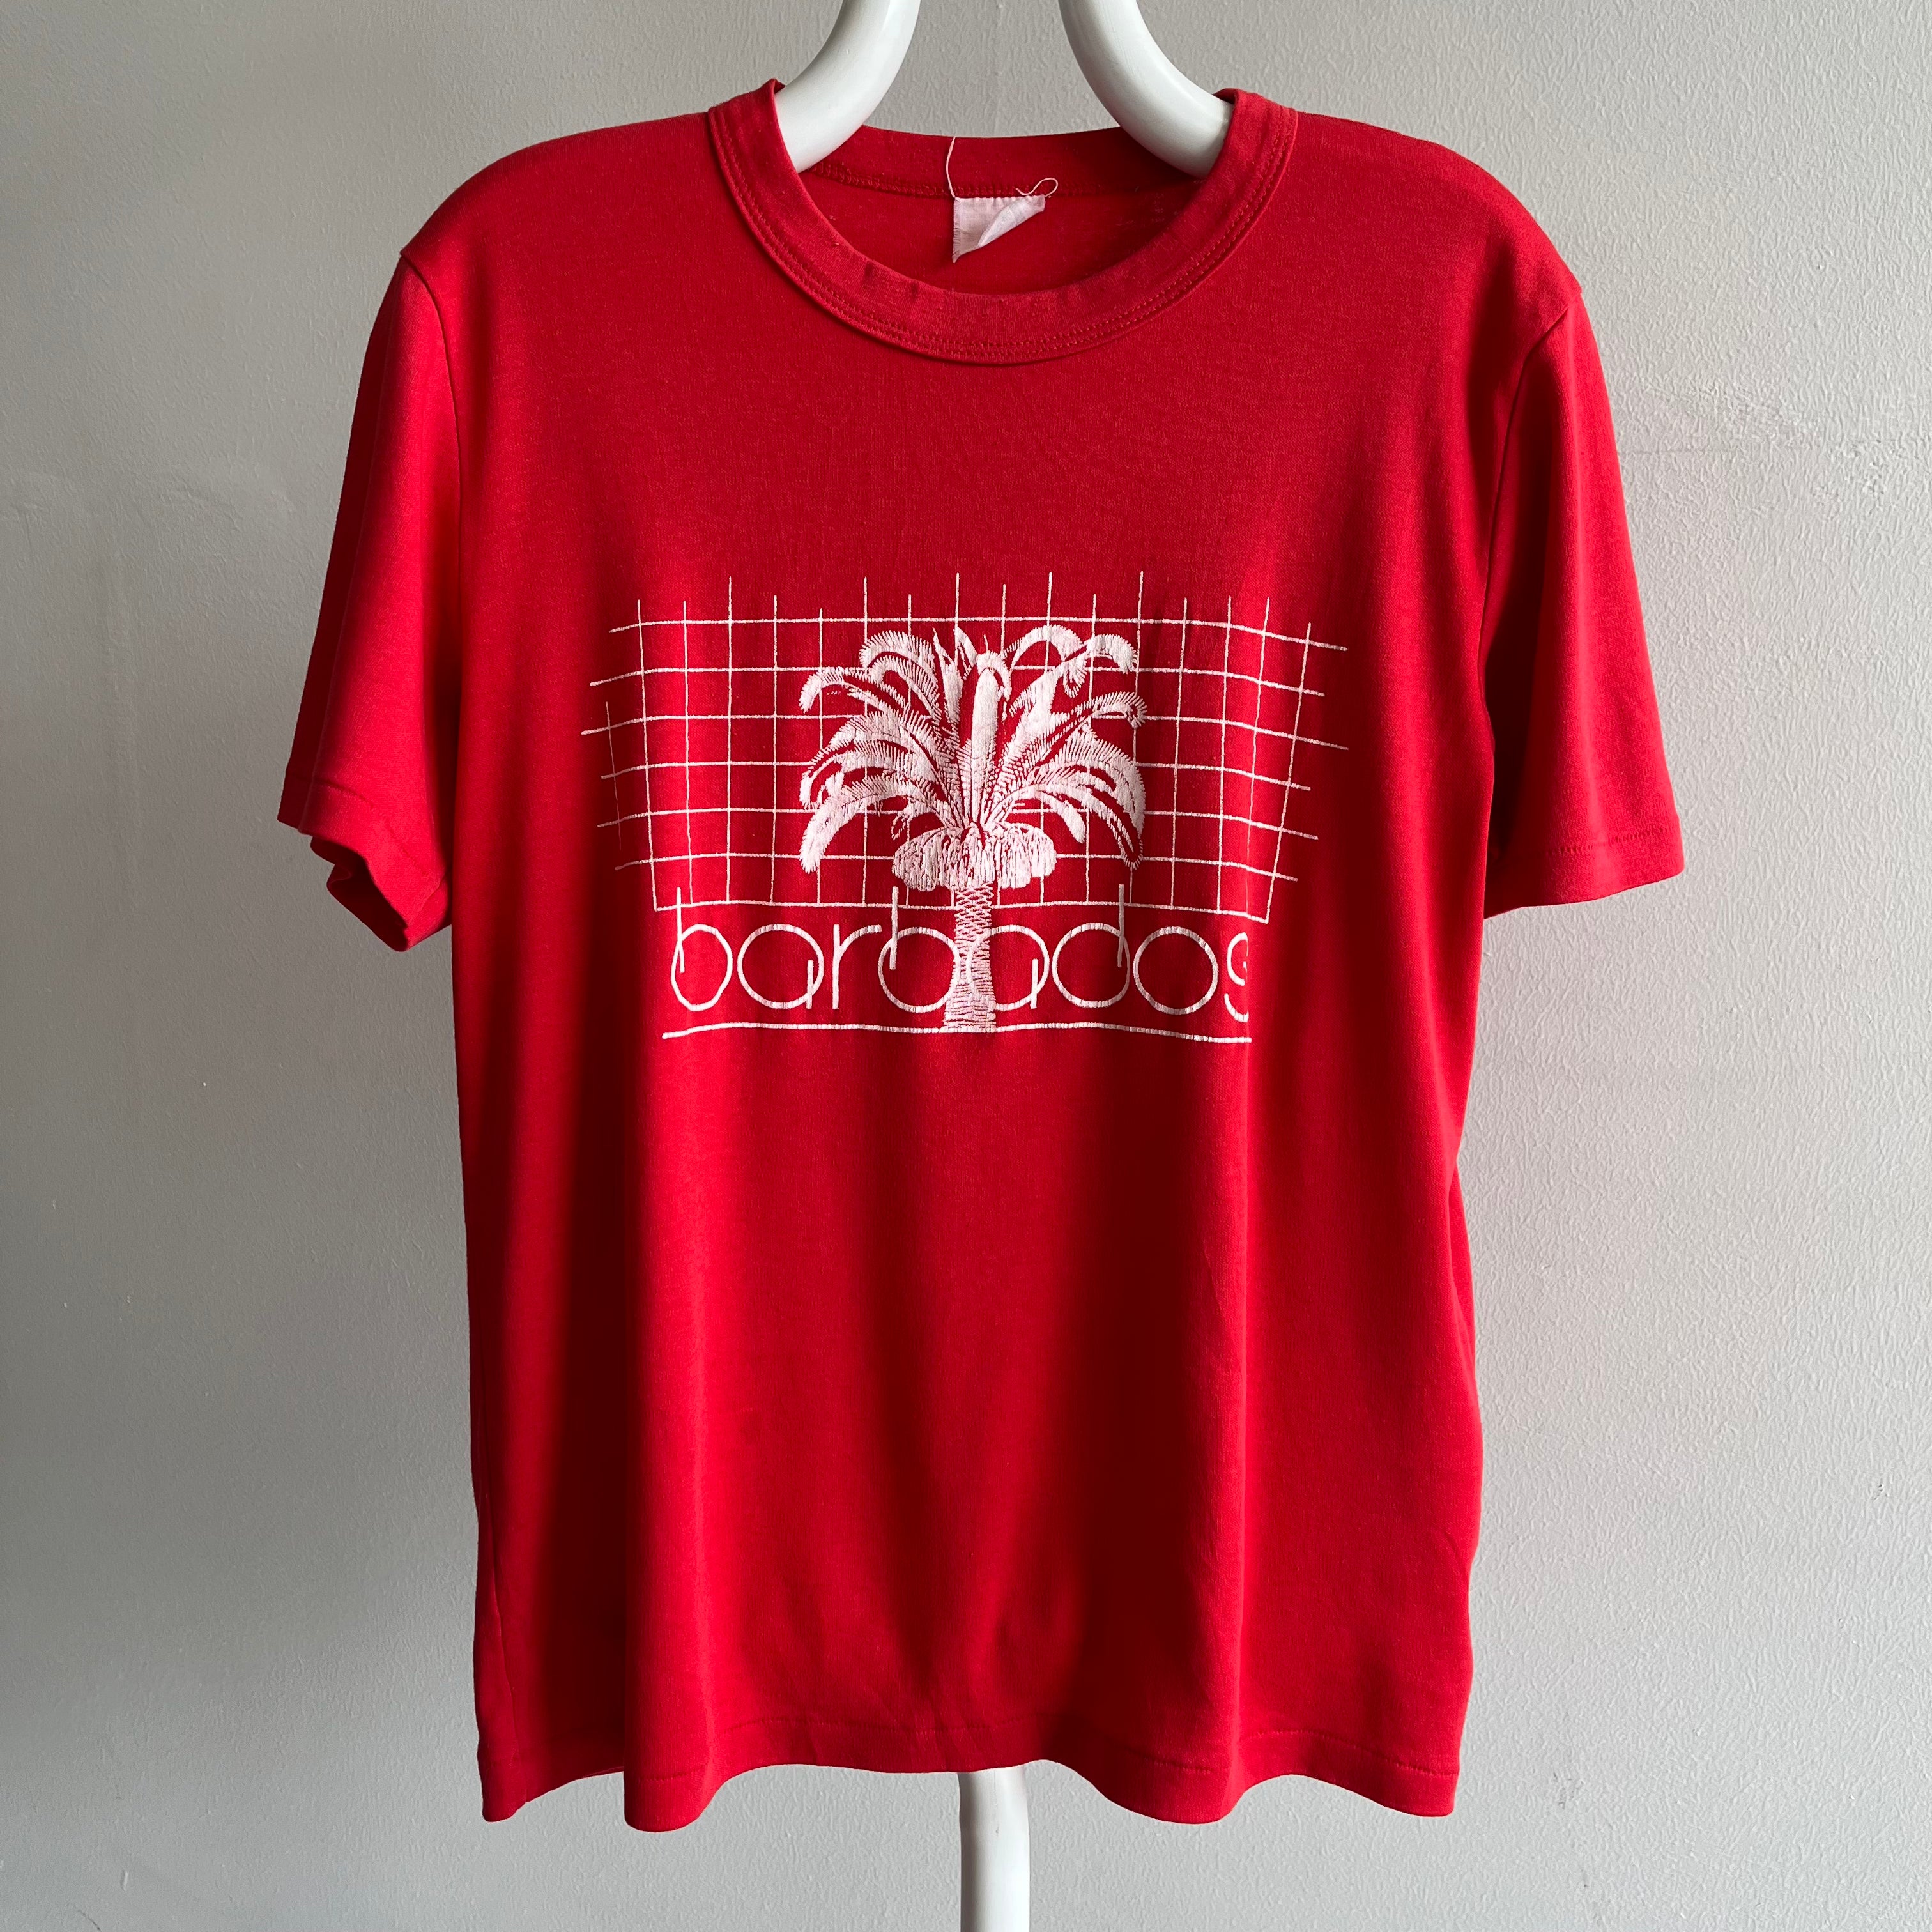 1980s Barbados Tourist T-Shirt